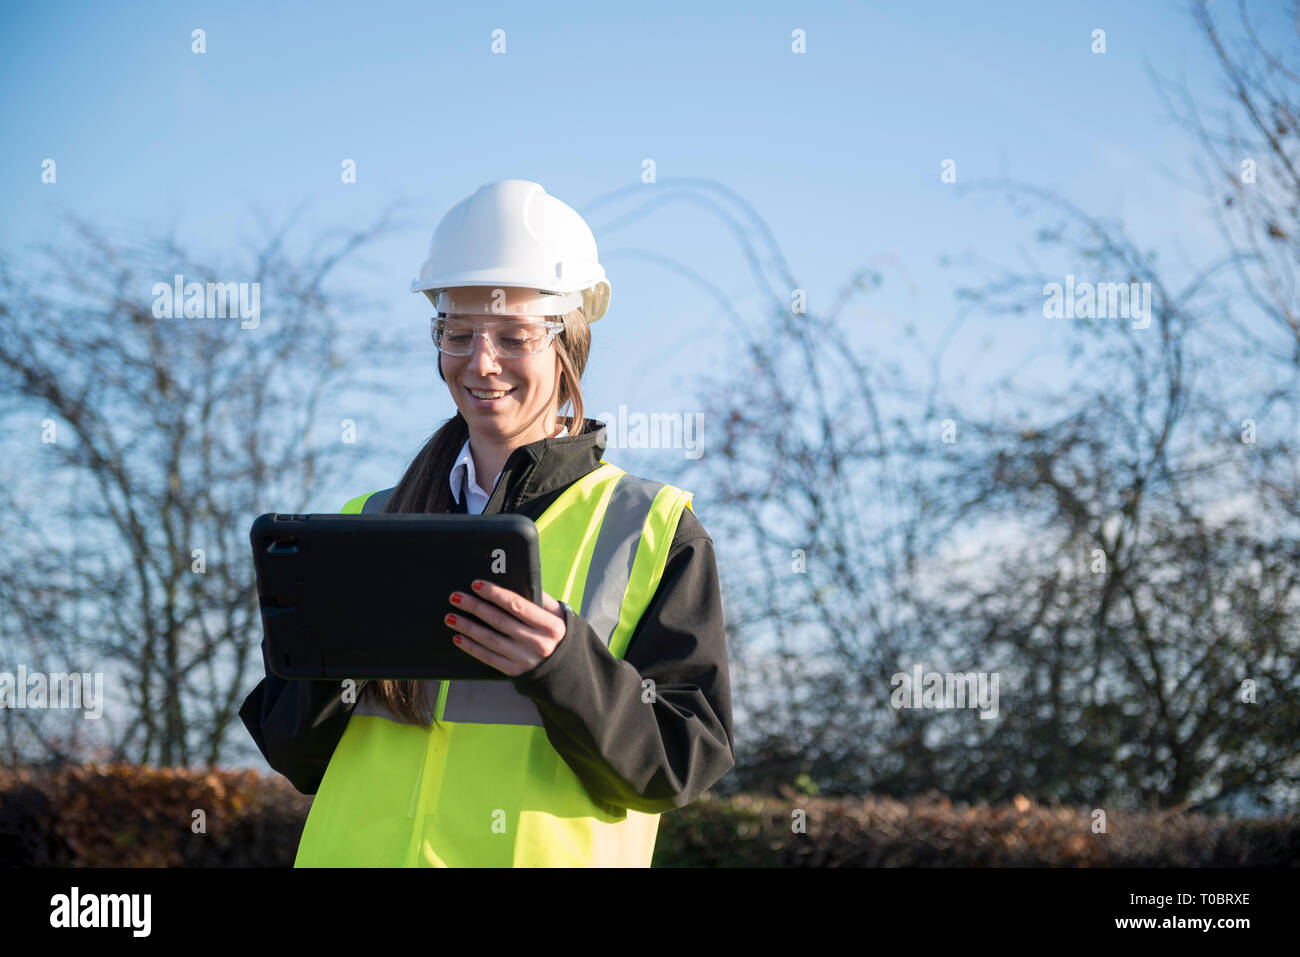 Une femme chef de projet / expert / travailleur de la construction en haute viz et l'équipement de sécurité utilise une tablette / ipad à l'entrée d'information elle s'est connecté Banque D'Images